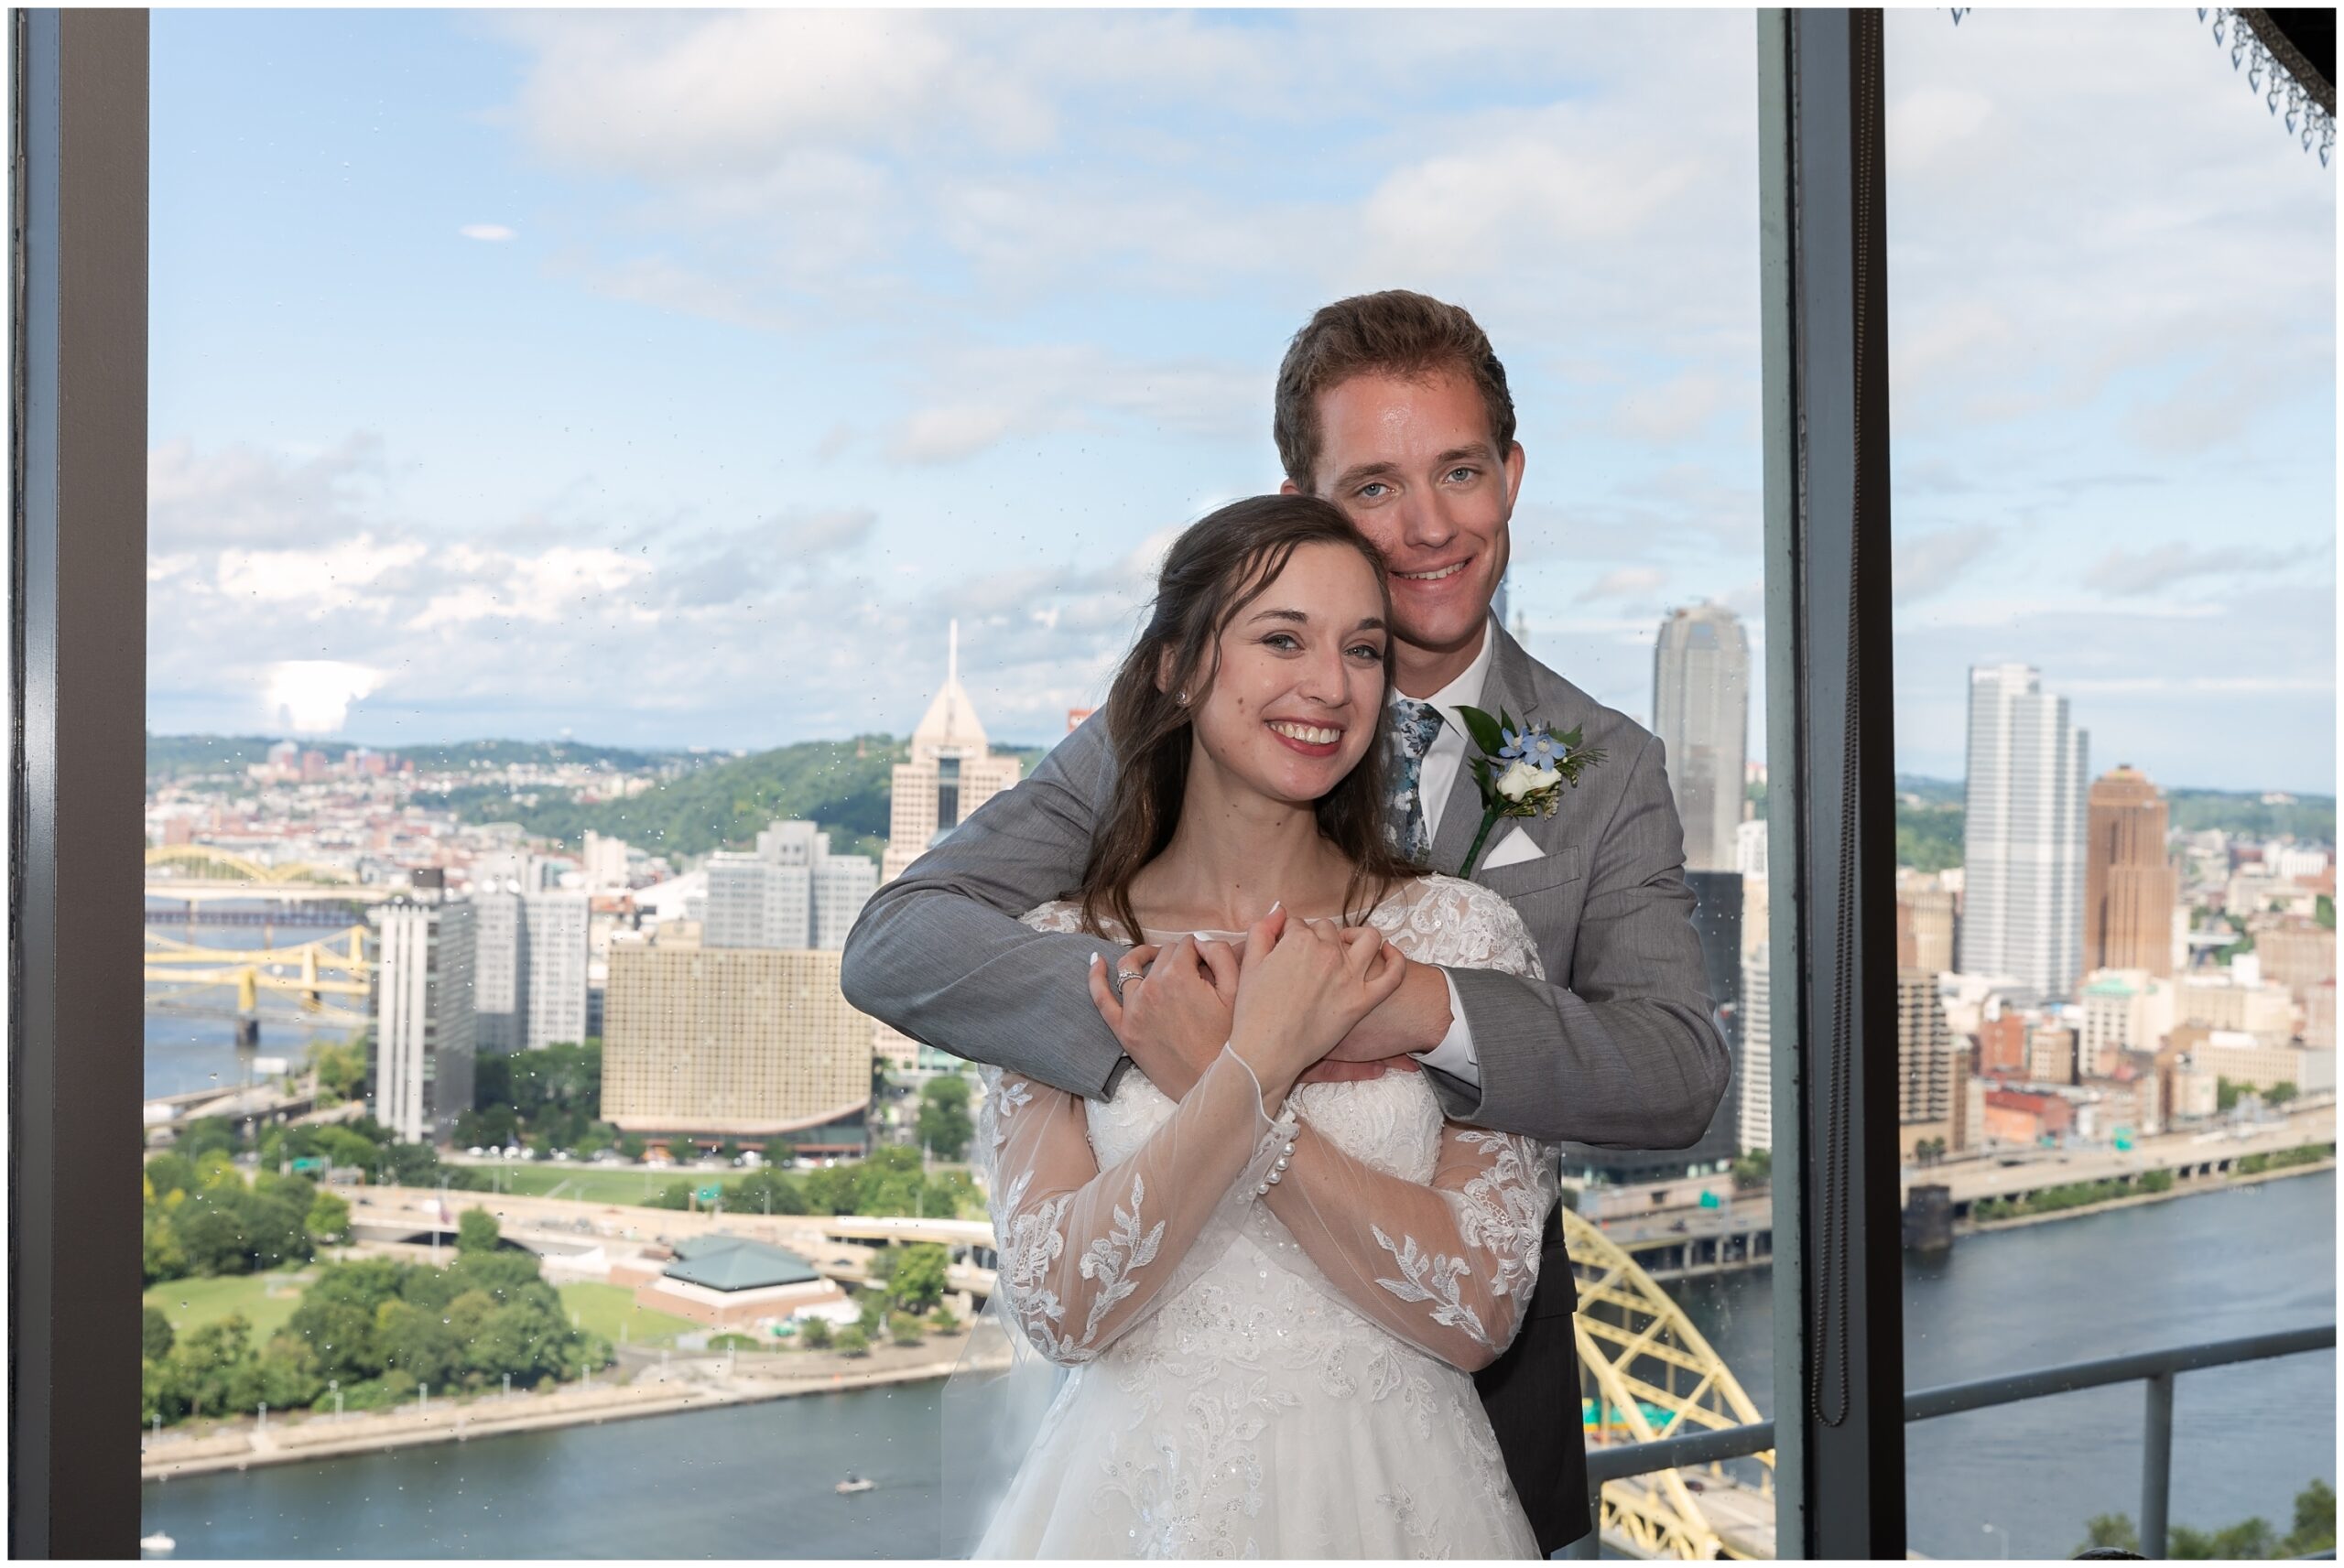 LeMont Wedding Photos by Pittsburgh Wedding Photographer Catherine Acevedo Photography